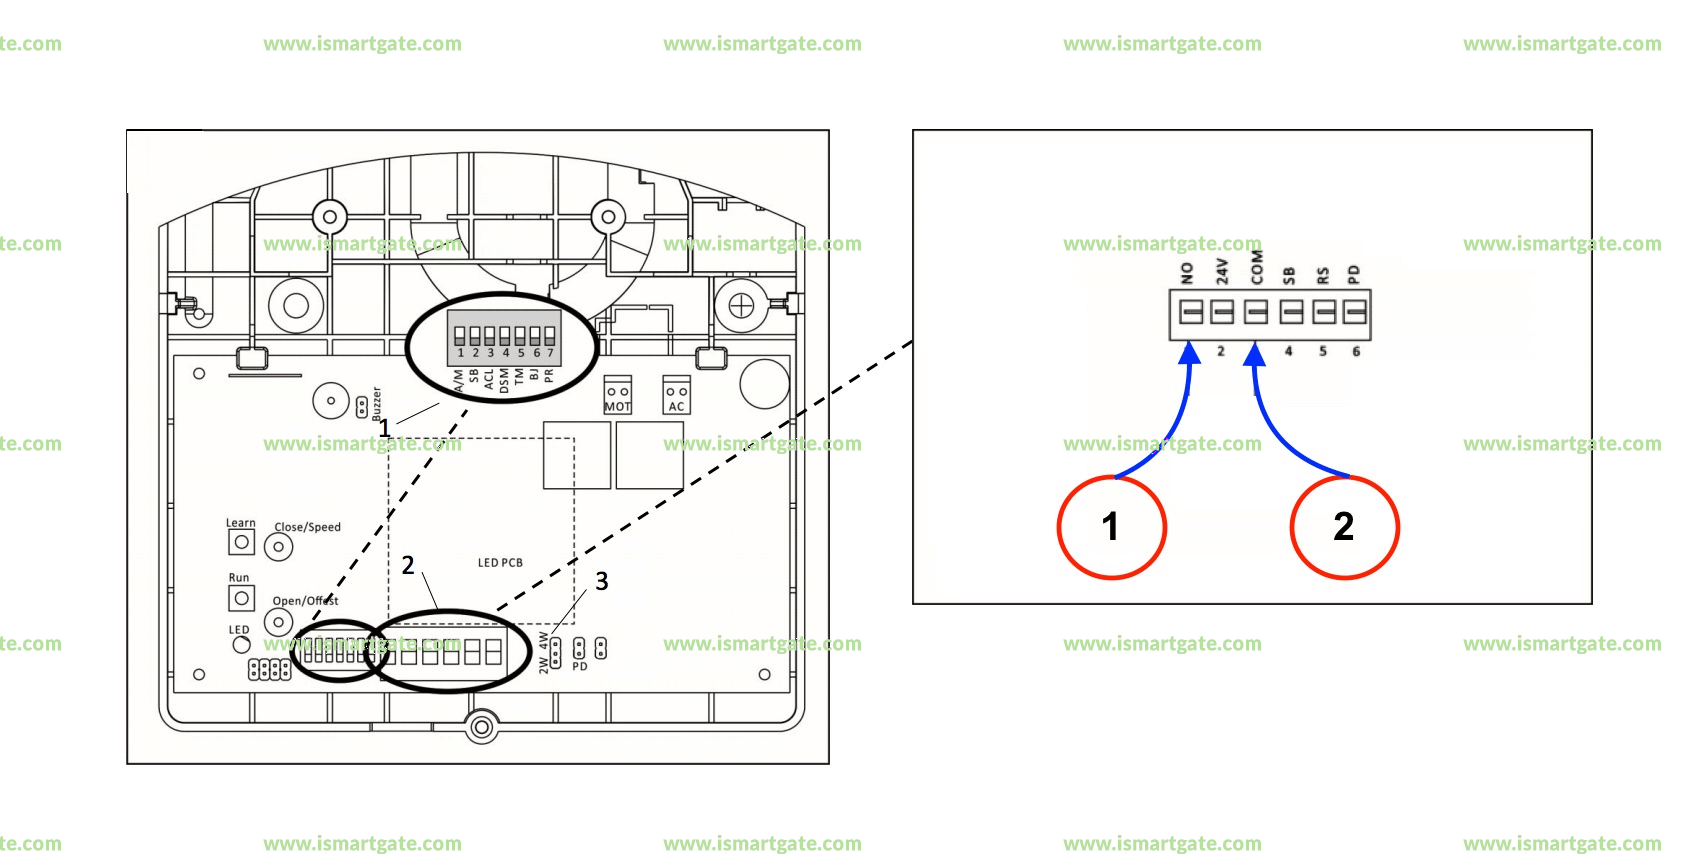 Wiring diagram for AVANTI Garage Door